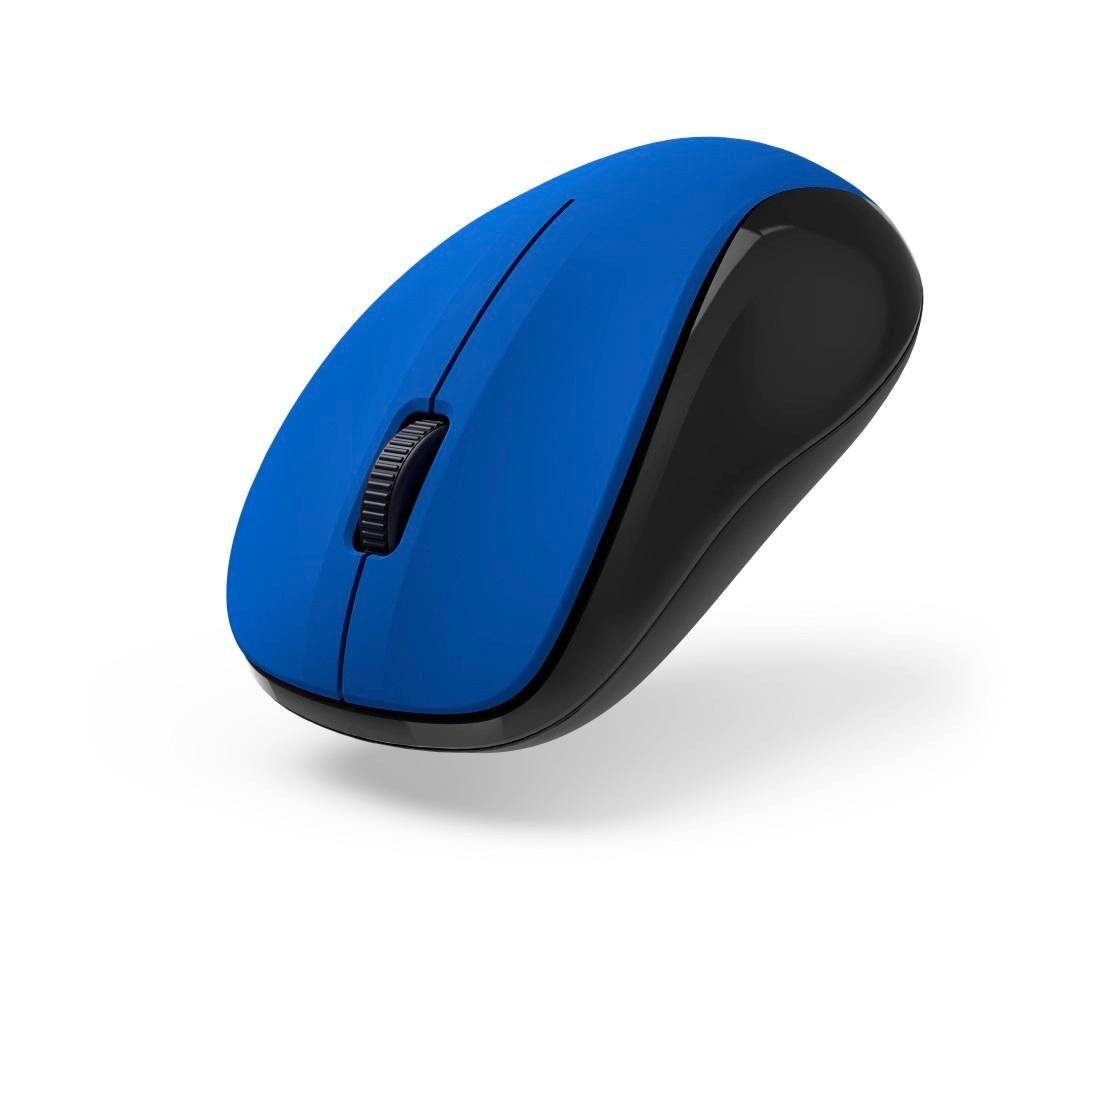 Hama Optische blau Tasten 3 Empfänger USB Maus Funkmaus V2", "MW-300 geräuschlos